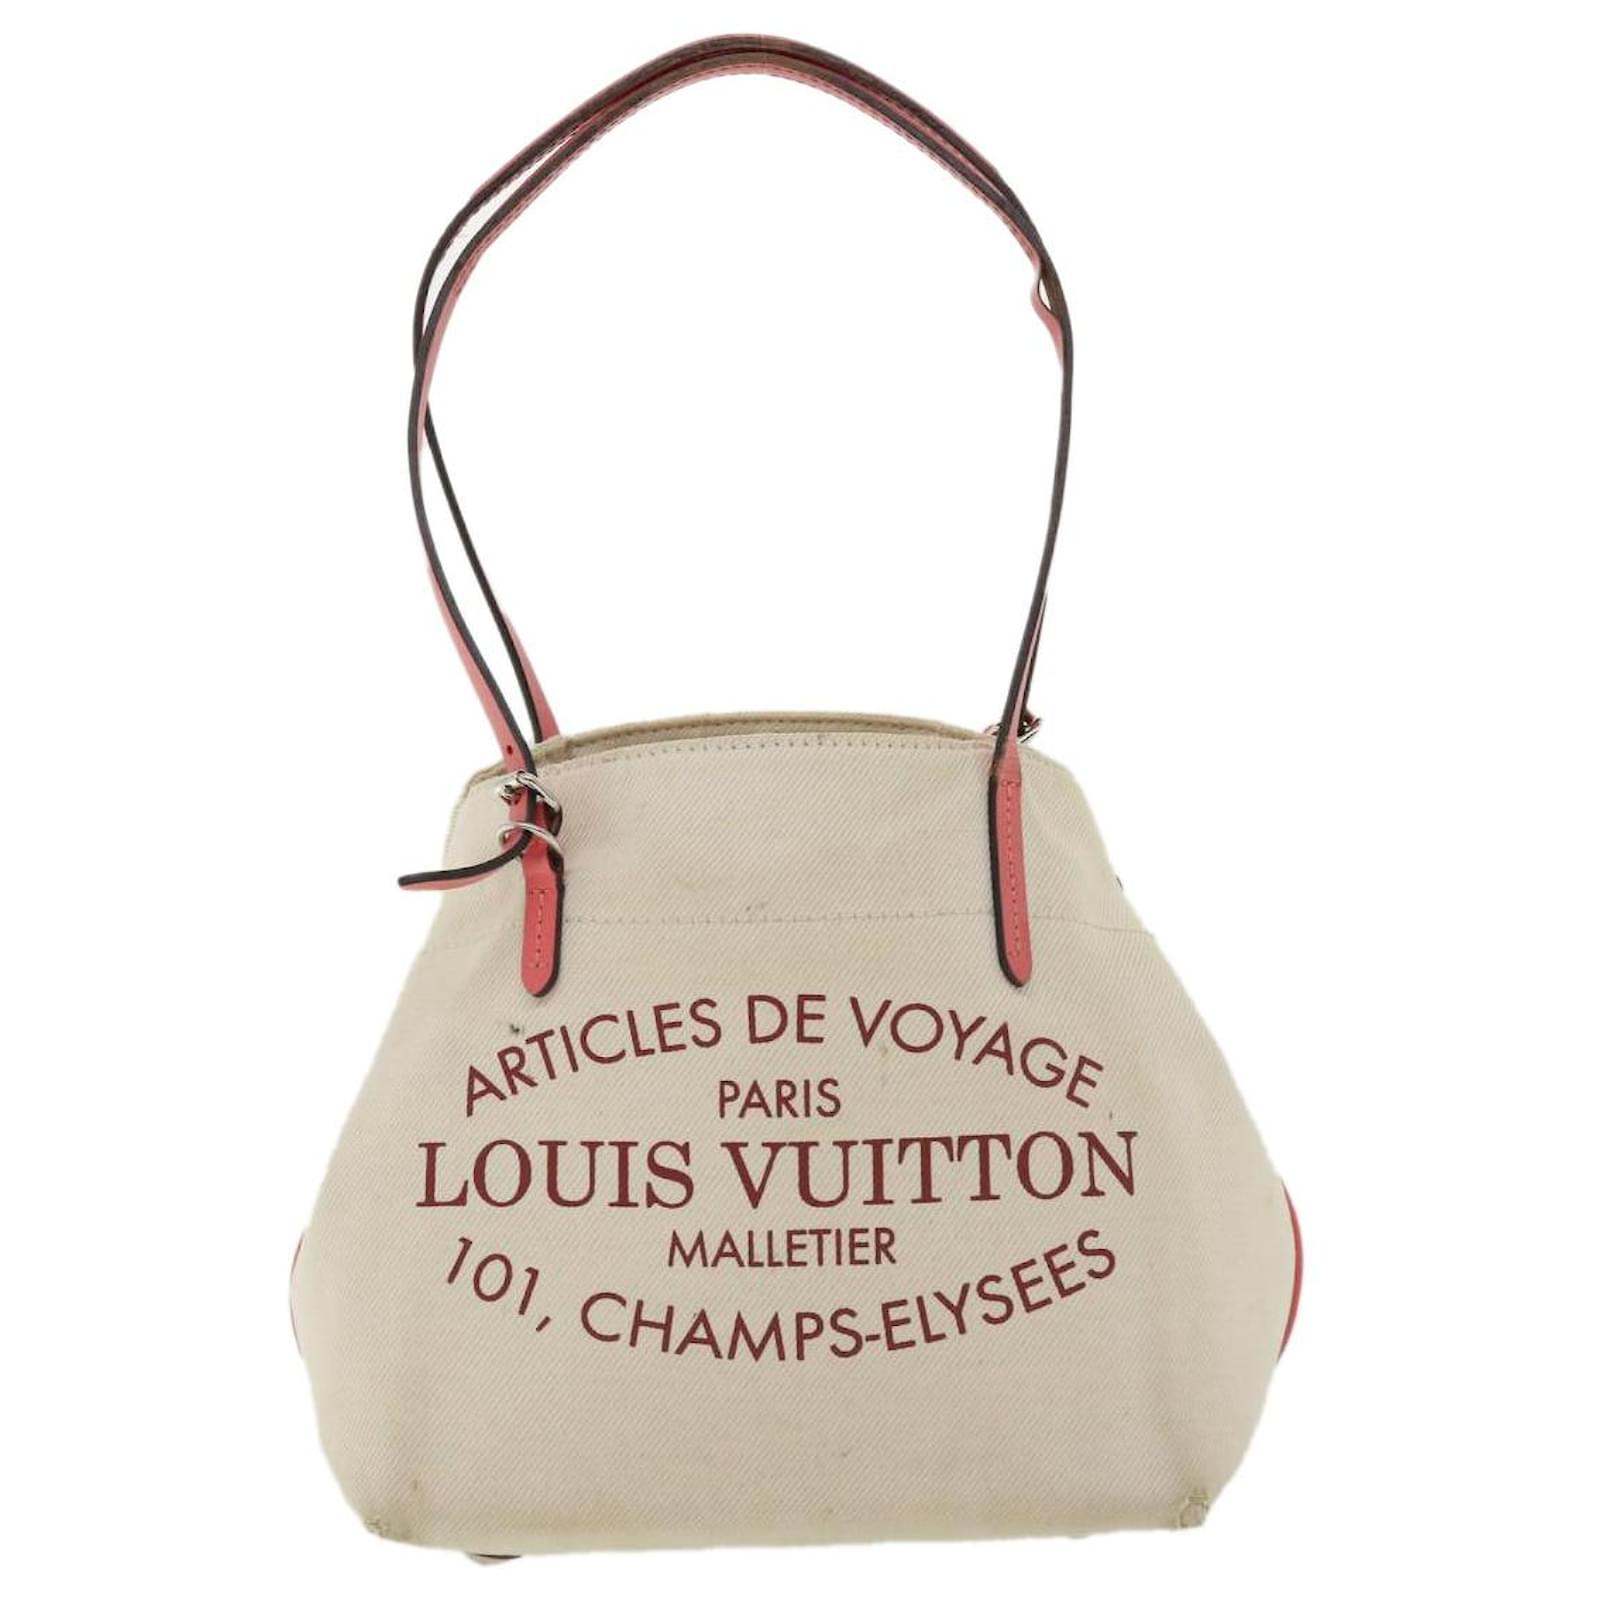 Louis Vuitton Articles De Voyage Paris Malletier 101 -  Denmark